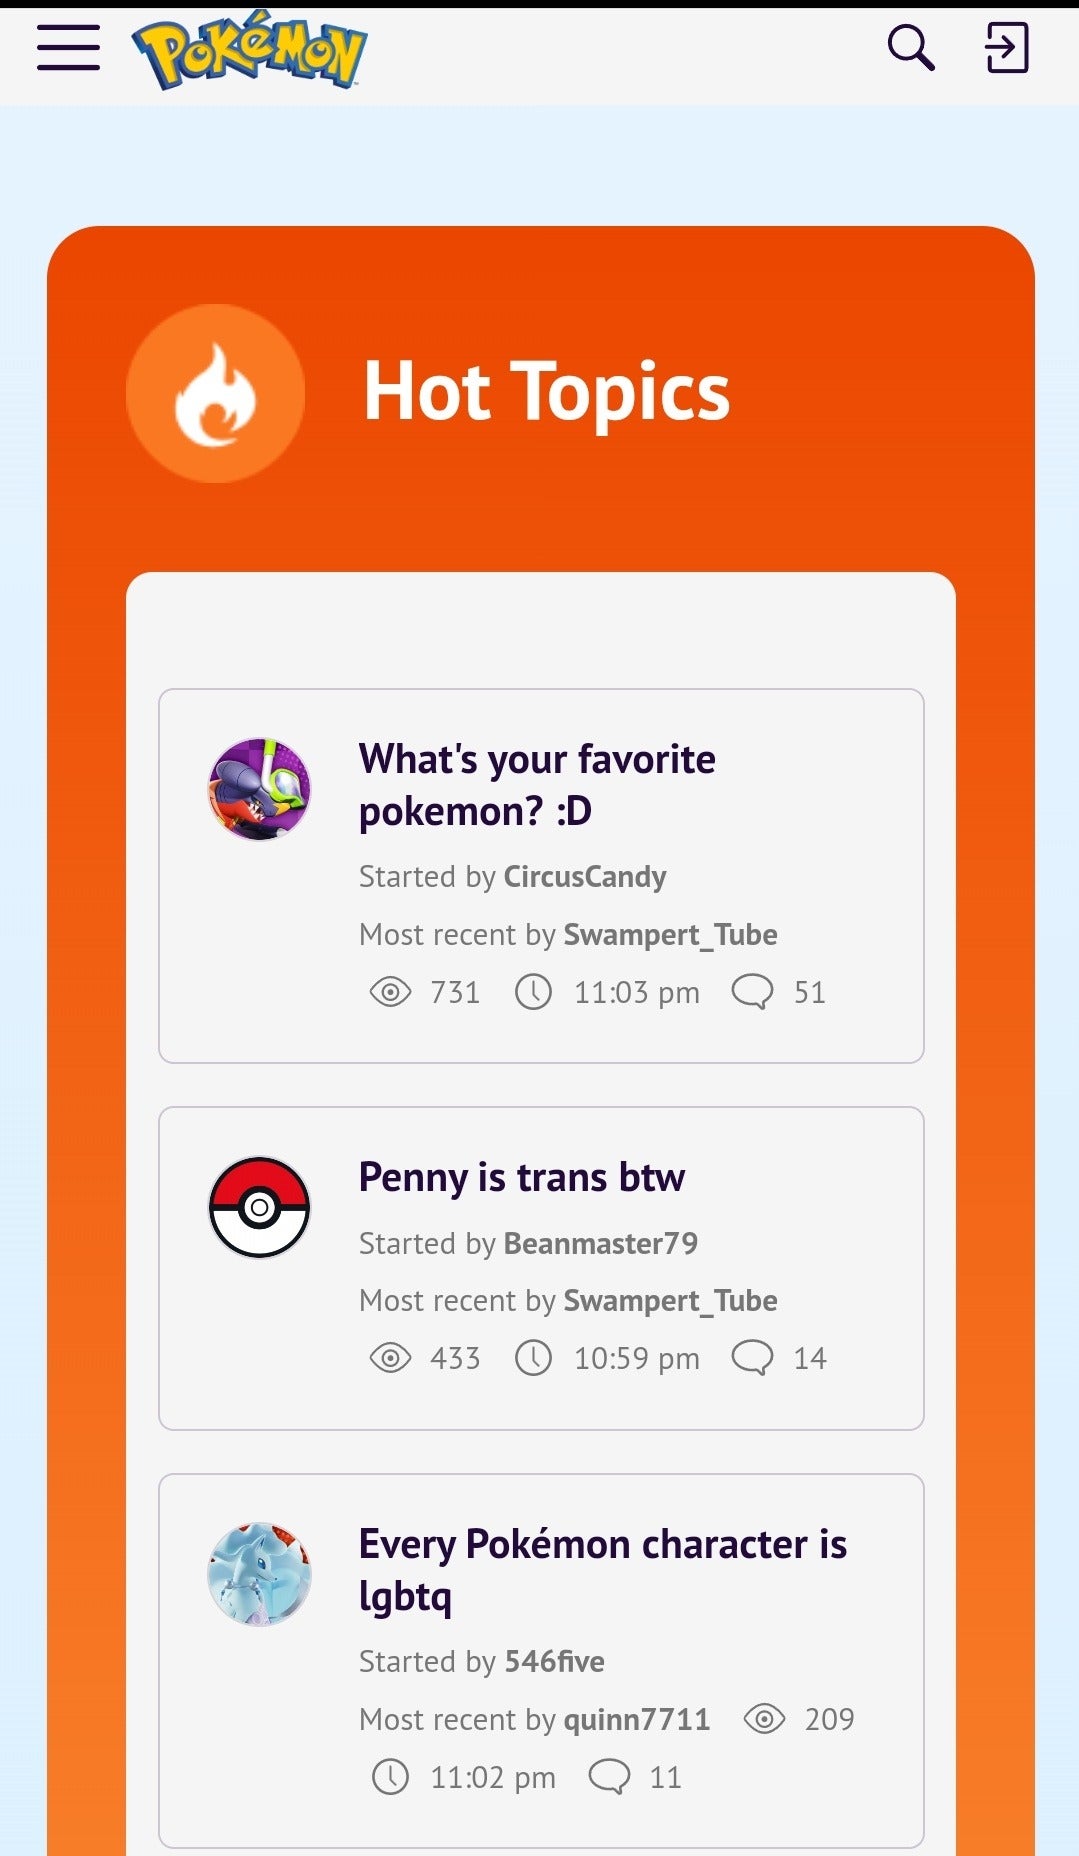 Megjelennek a fórumtémák, pl "mellesleg filléres kereszt," És "Minden Pokémon karakter LGBtq."